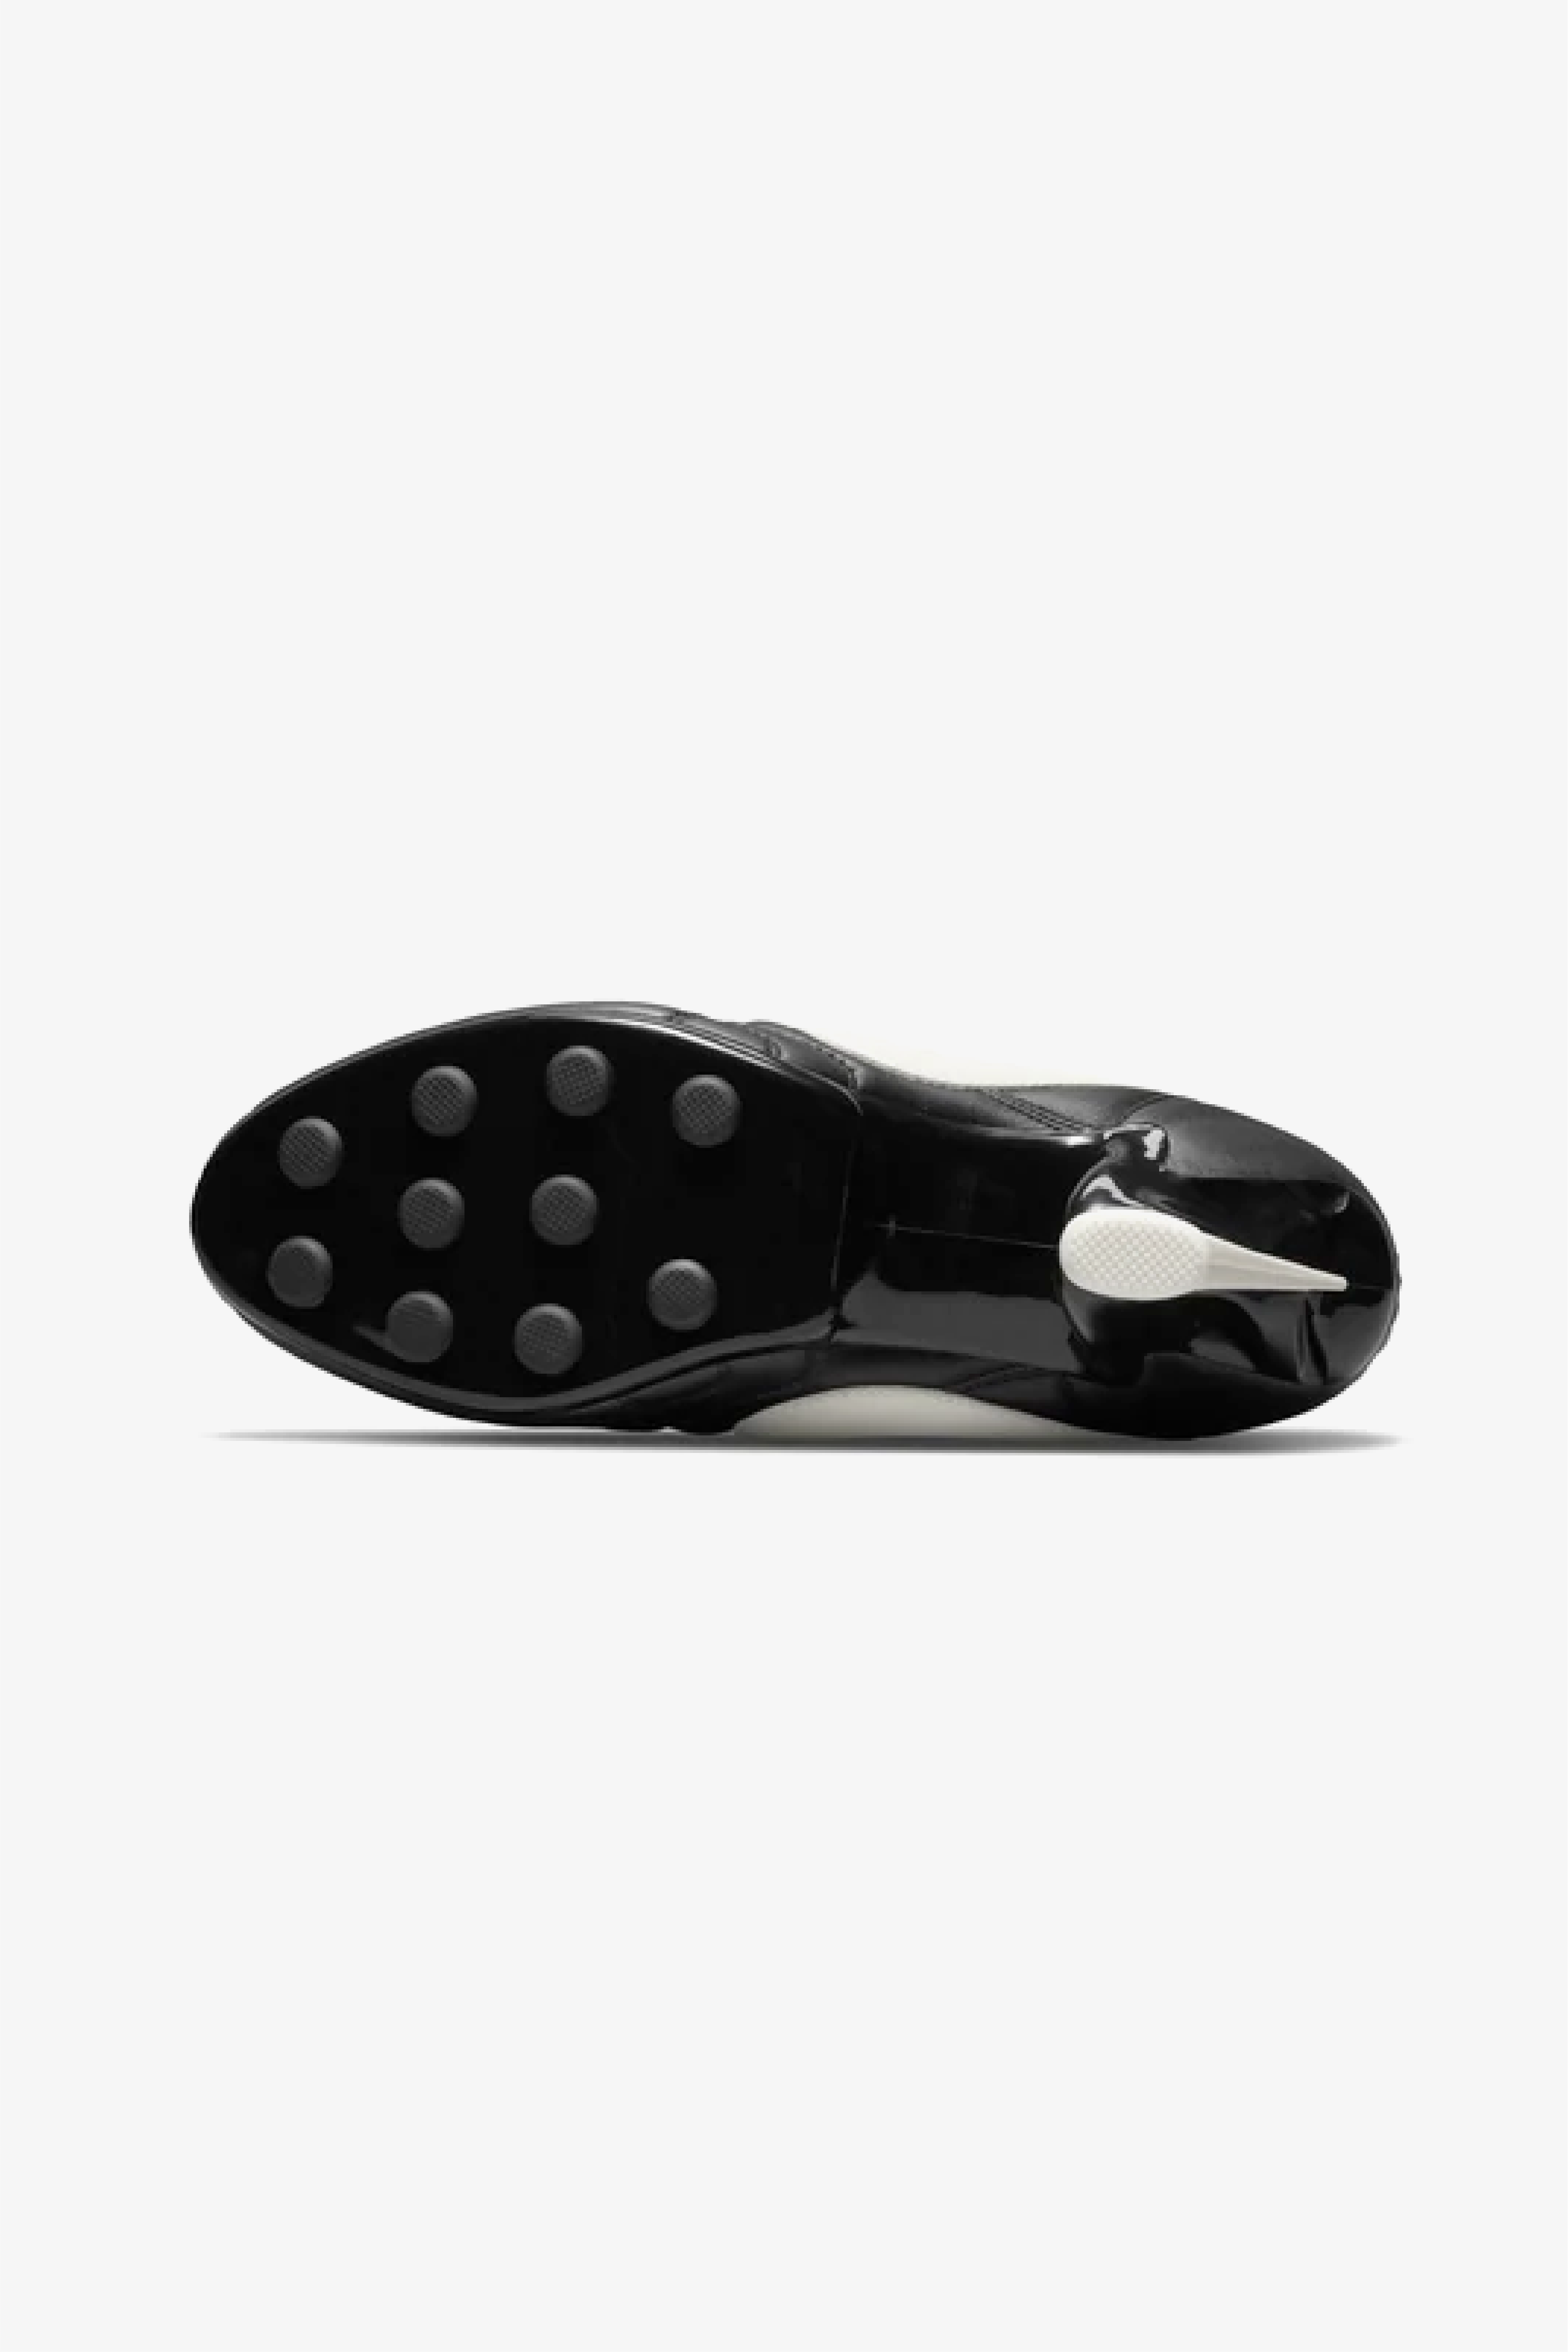 Selectshop FRAME - COMME DES GARÇONS Comme des Garçons x Nike Premier Footwear Dubai